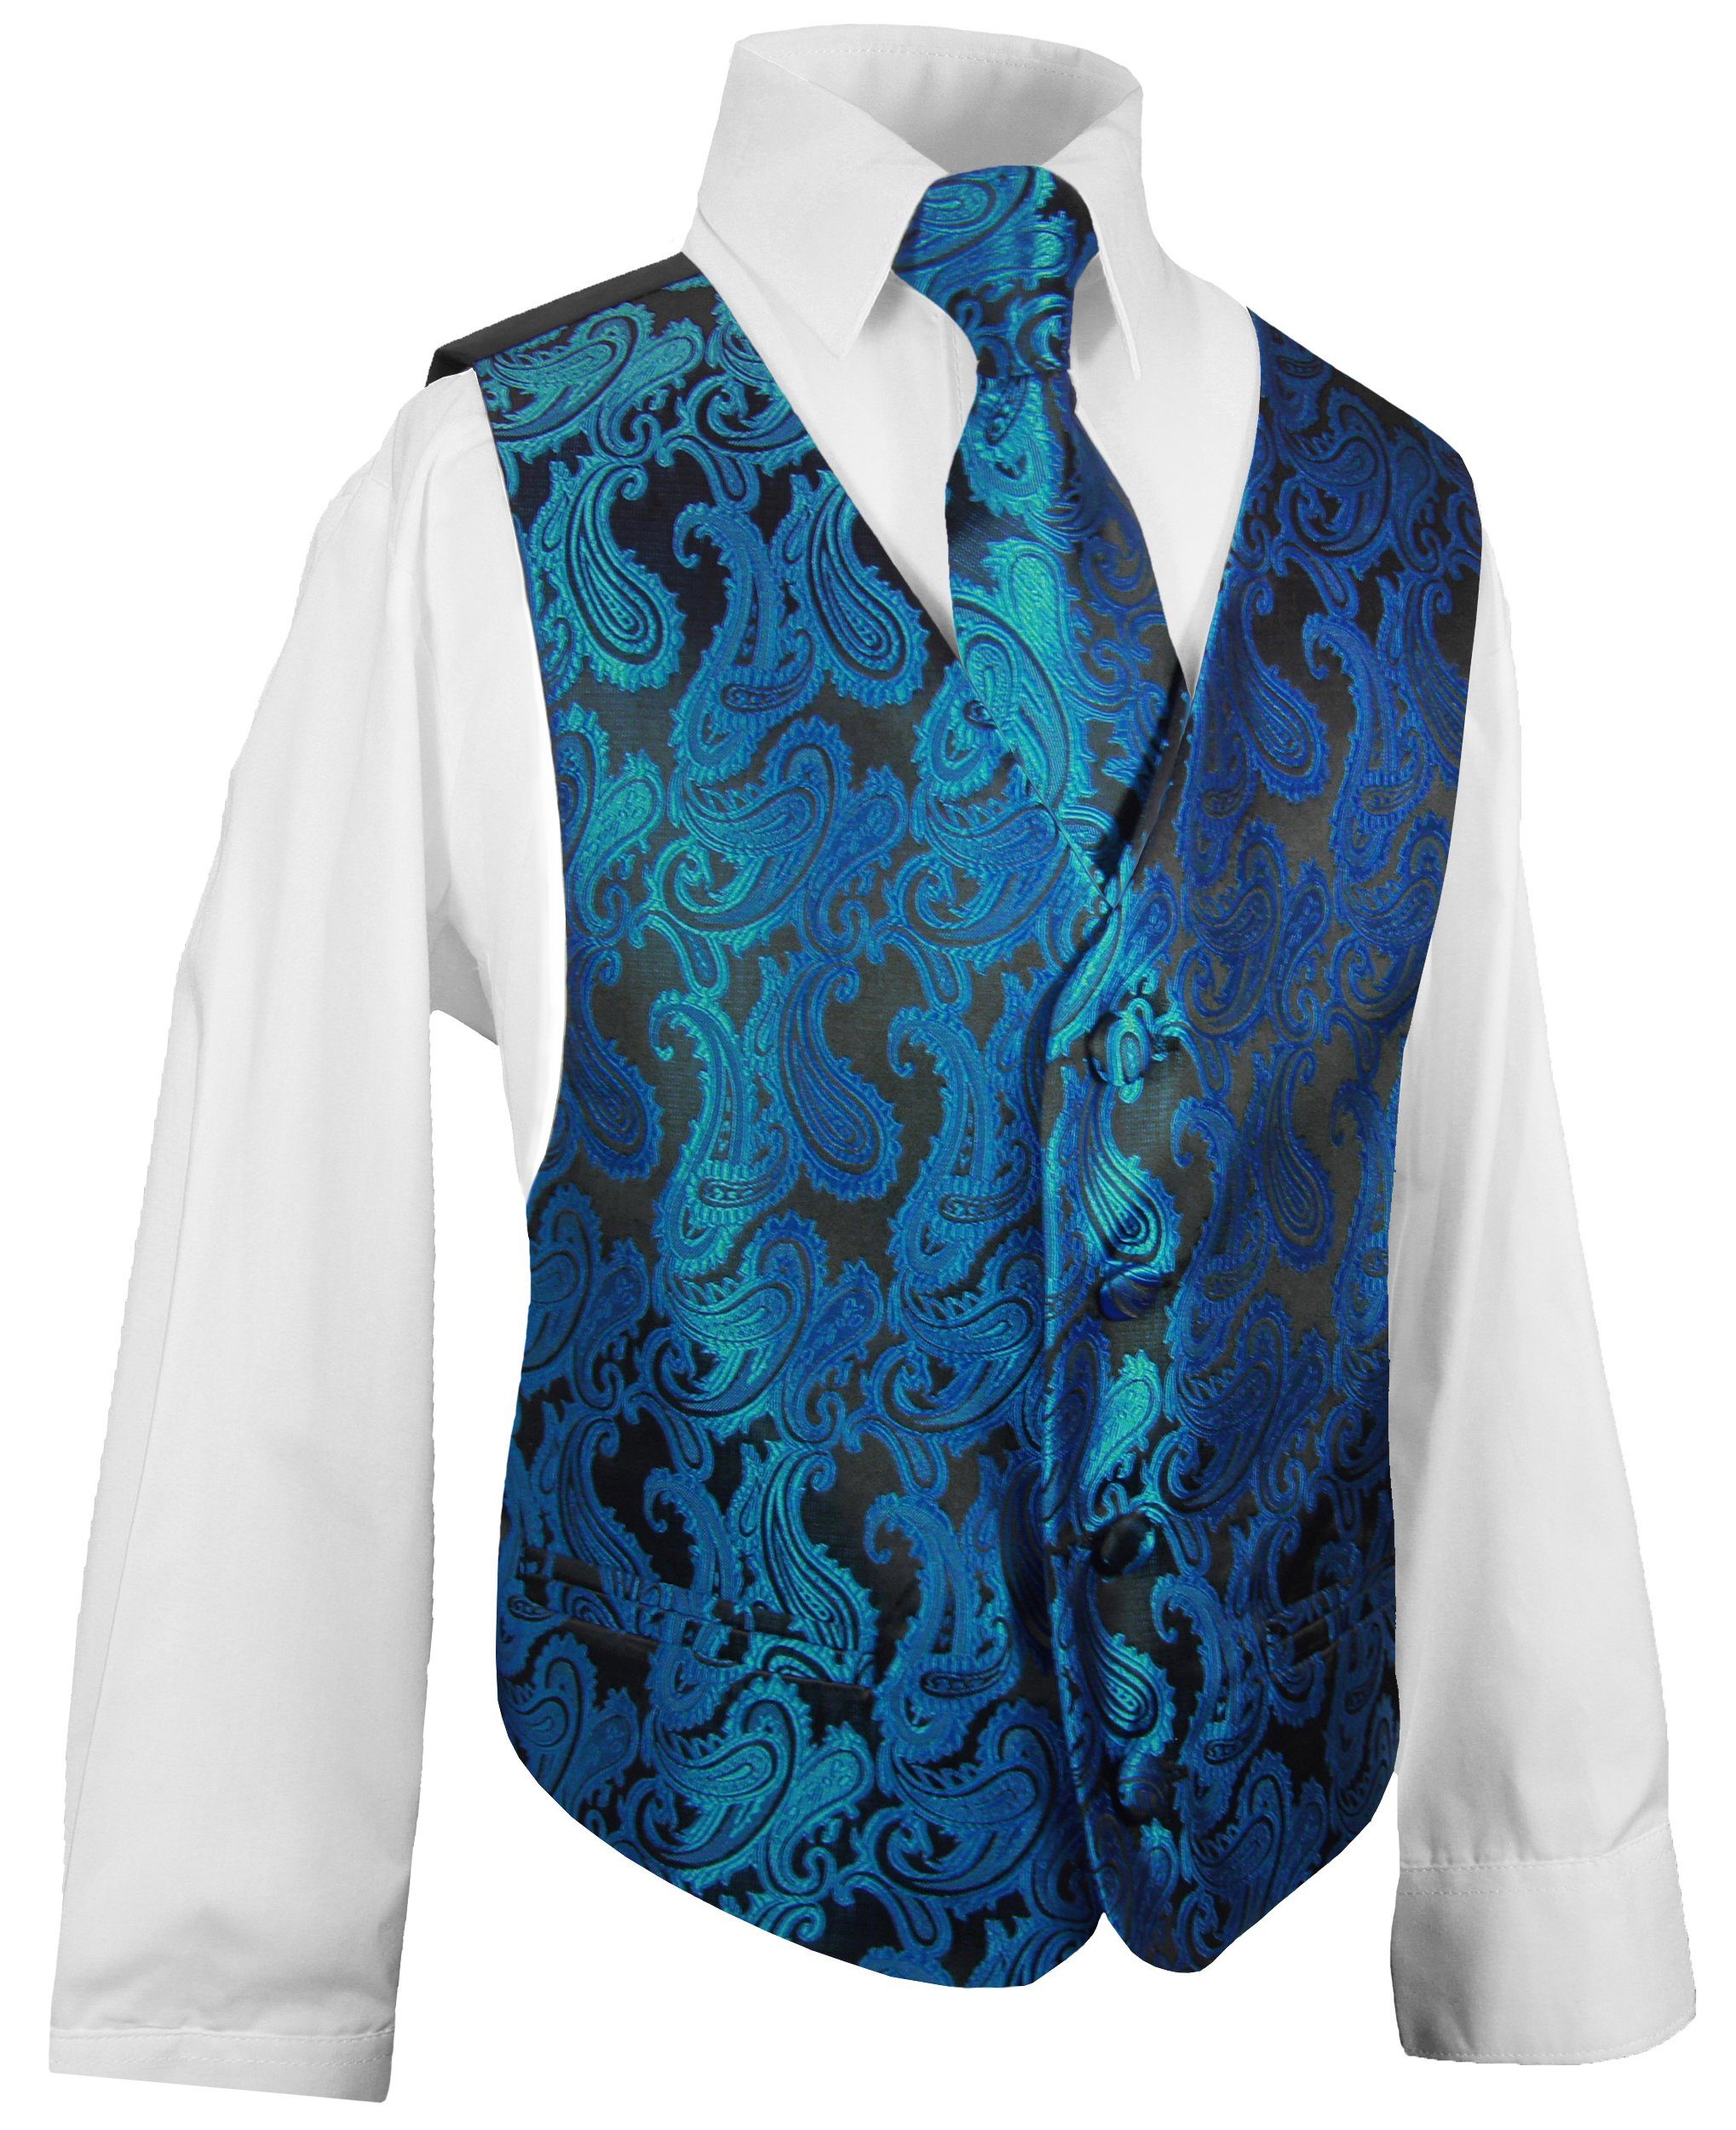 Paul Malone Anzugweste Festliche Kinderweste Jungenweste Kinder Anzug Weste (Set, 3-tlg., mit Weste, Hemd und Krawatte) petrol blau KV100-Krawatte